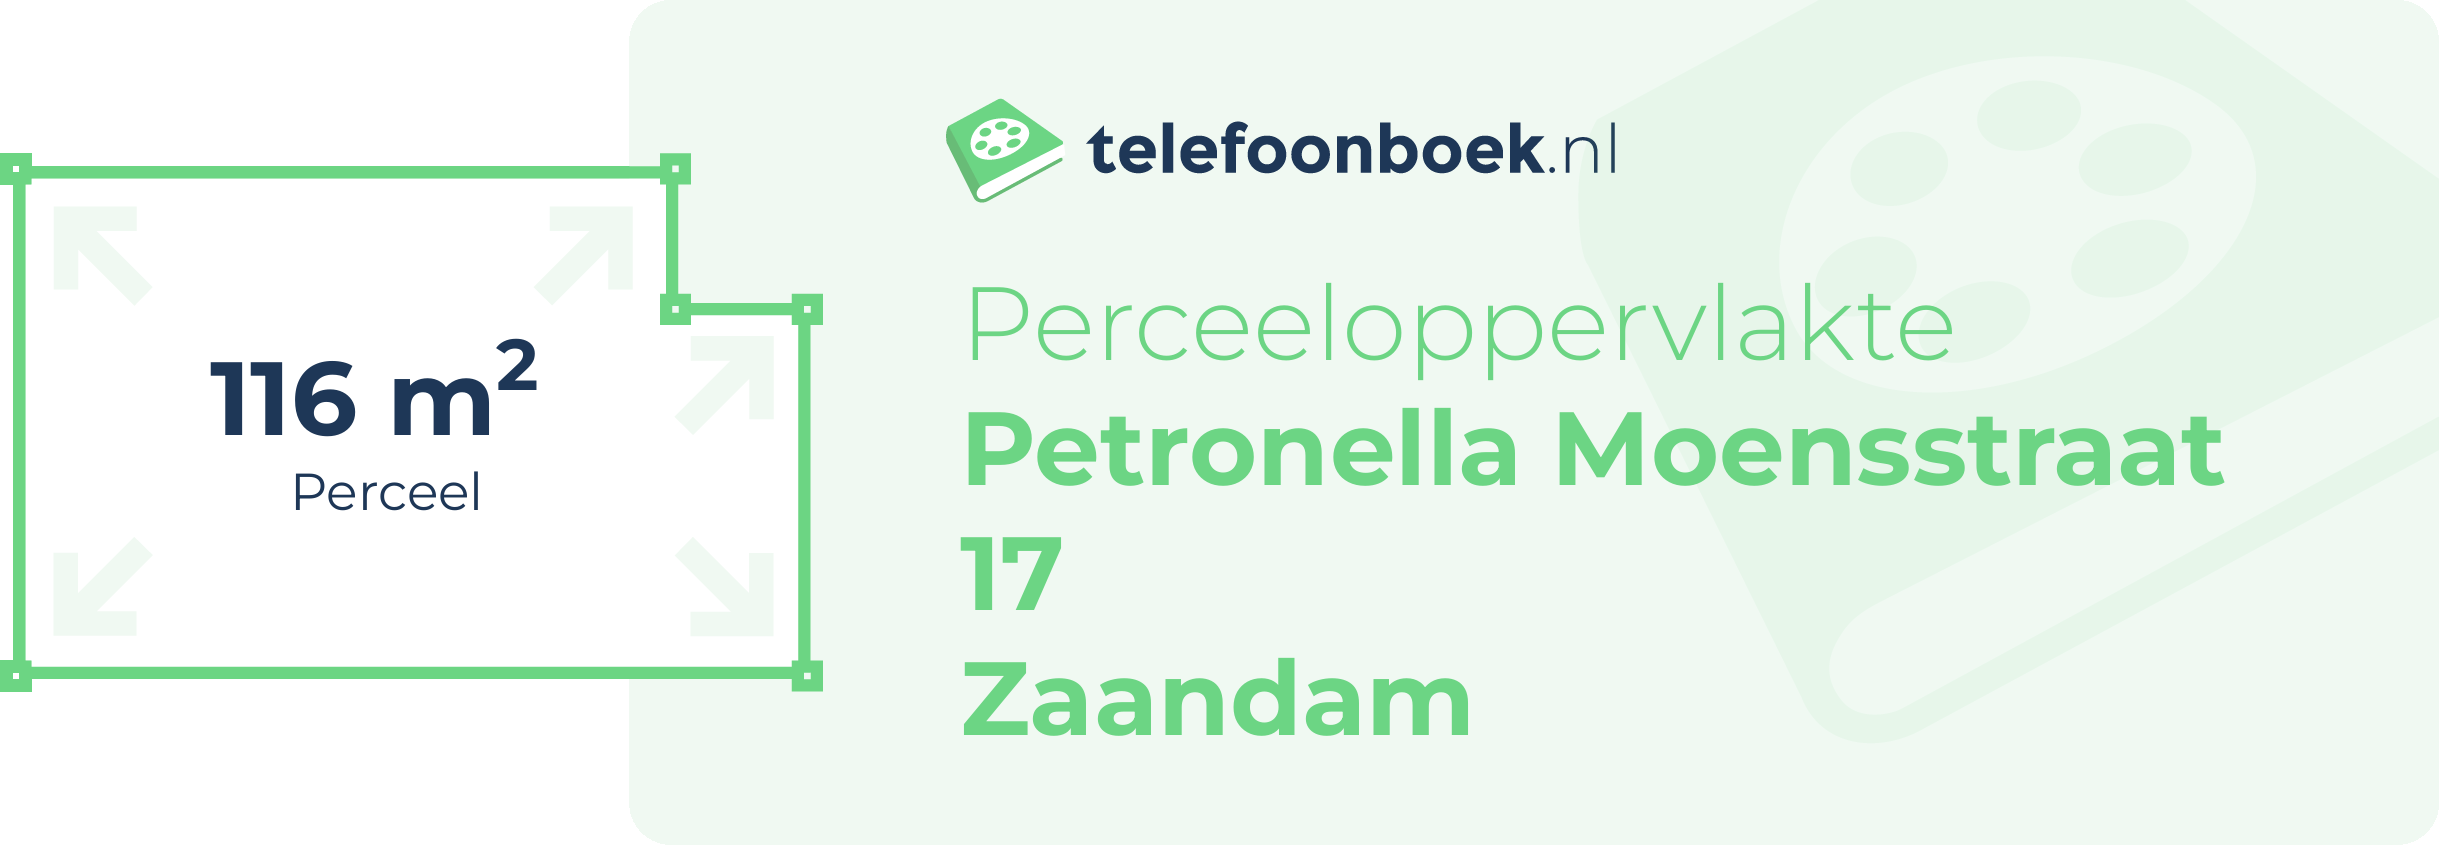 Perceeloppervlakte Petronella Moensstraat 17 Zaandam